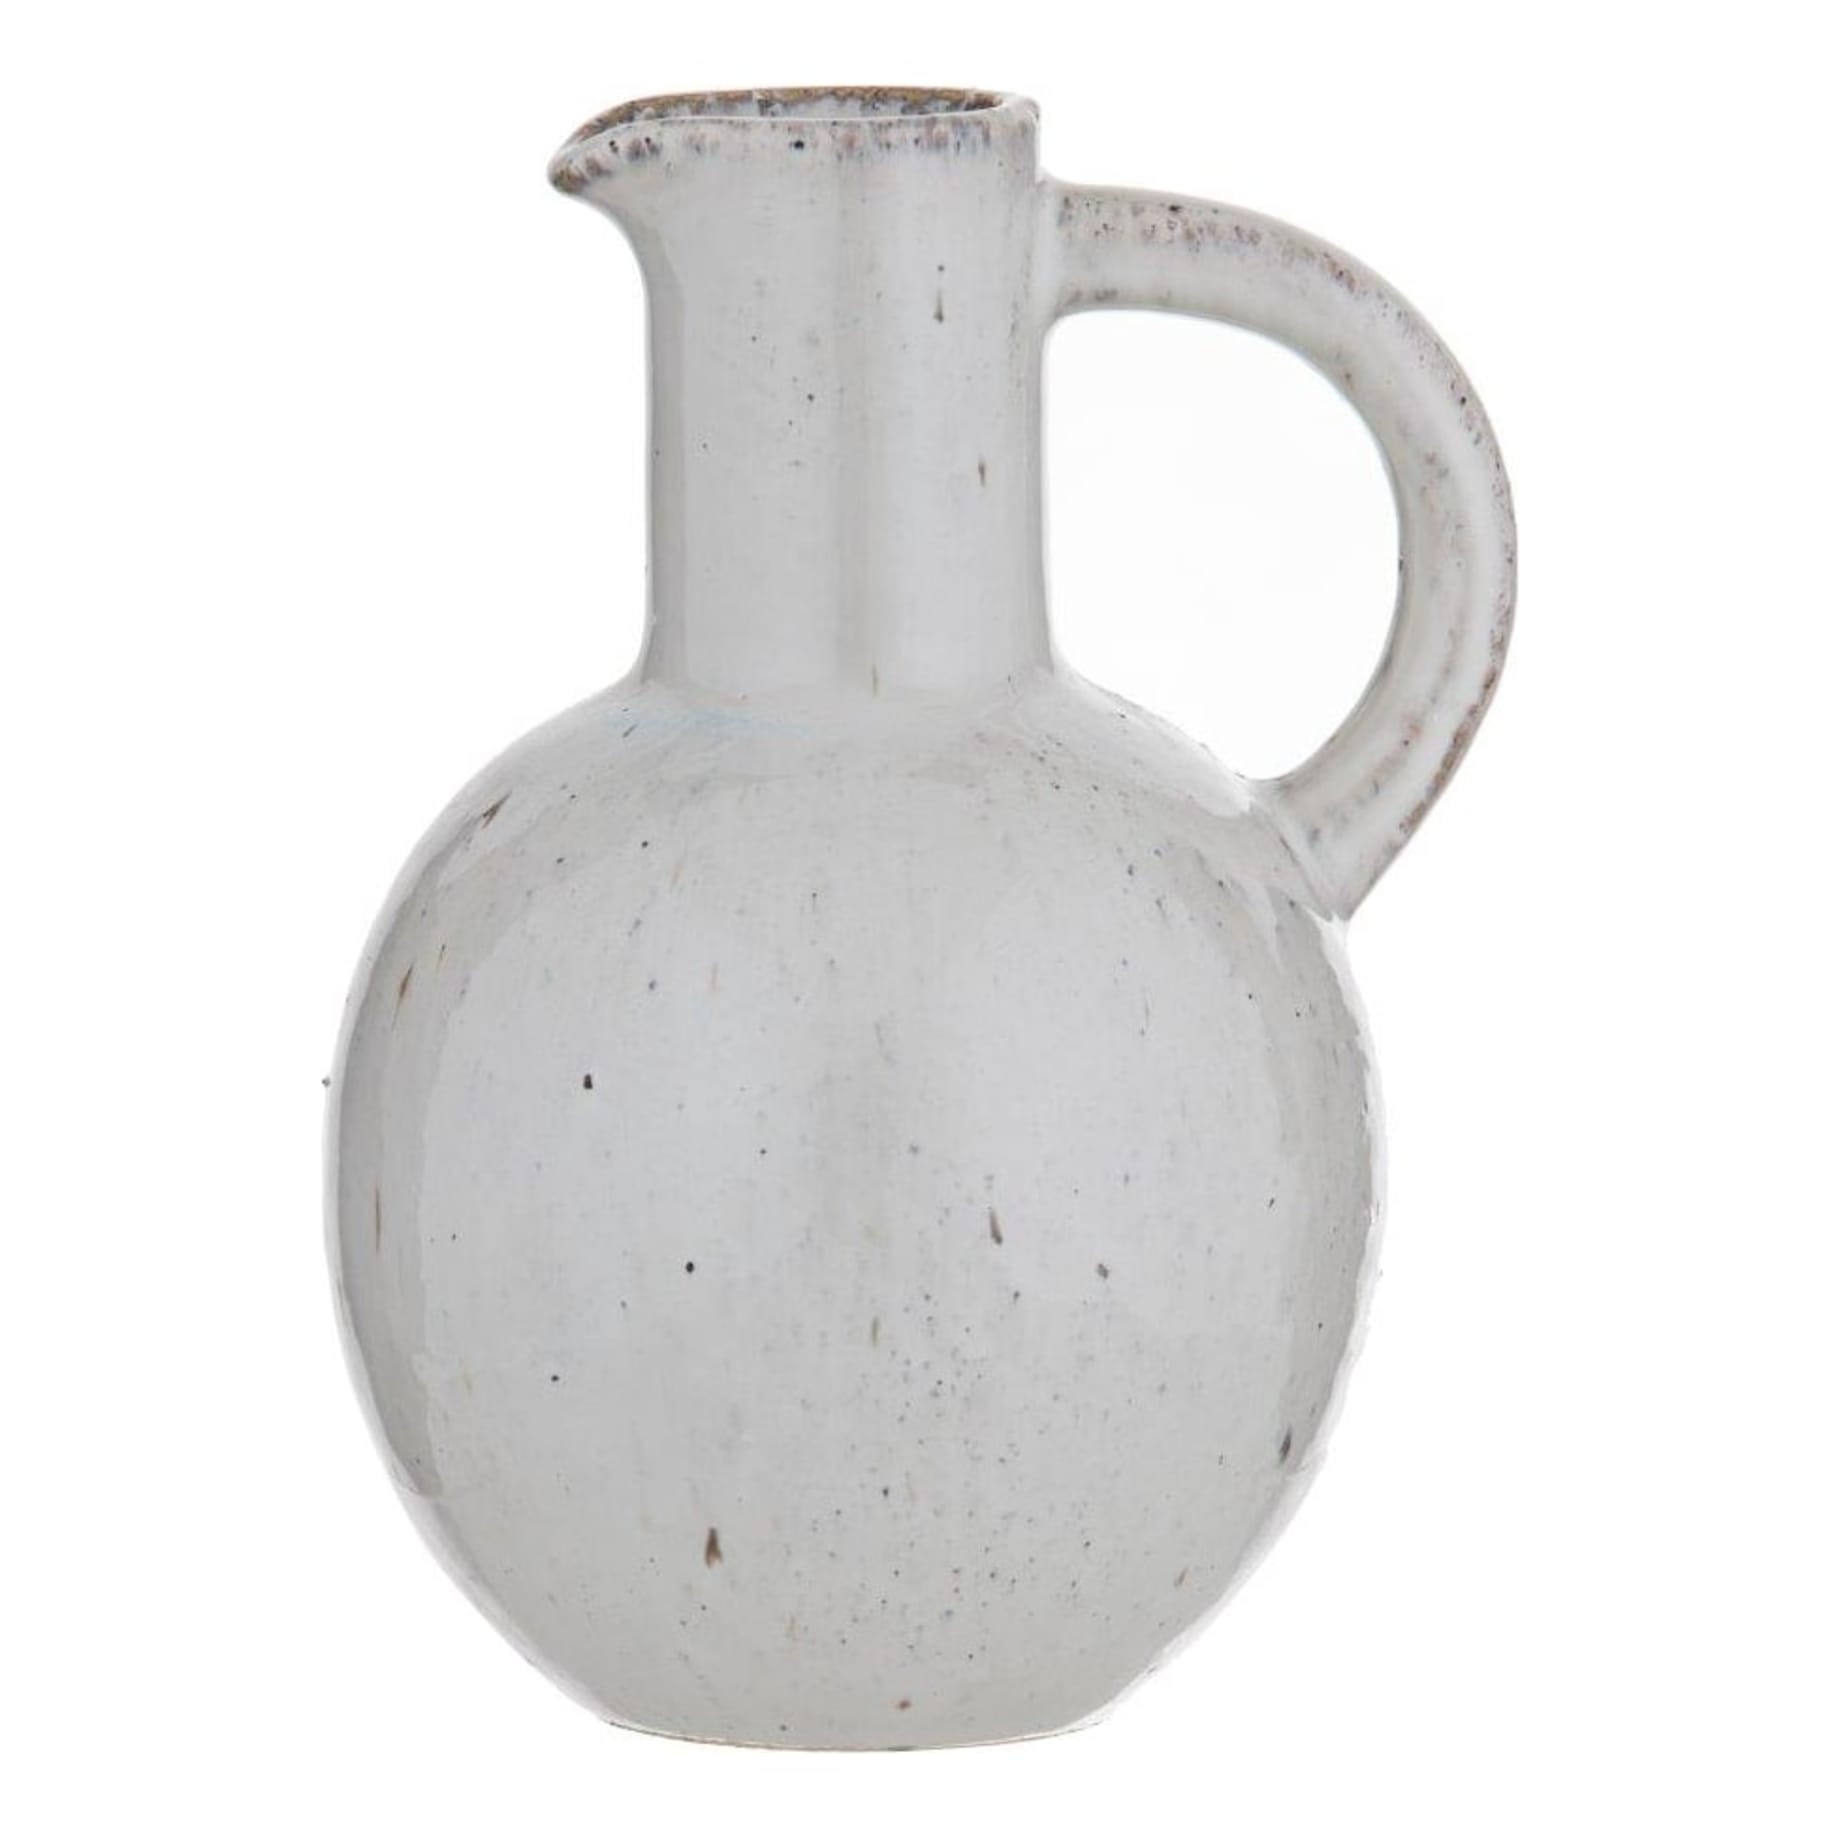 Tilda Vessel 15x20cm in Ceramic Vintage White